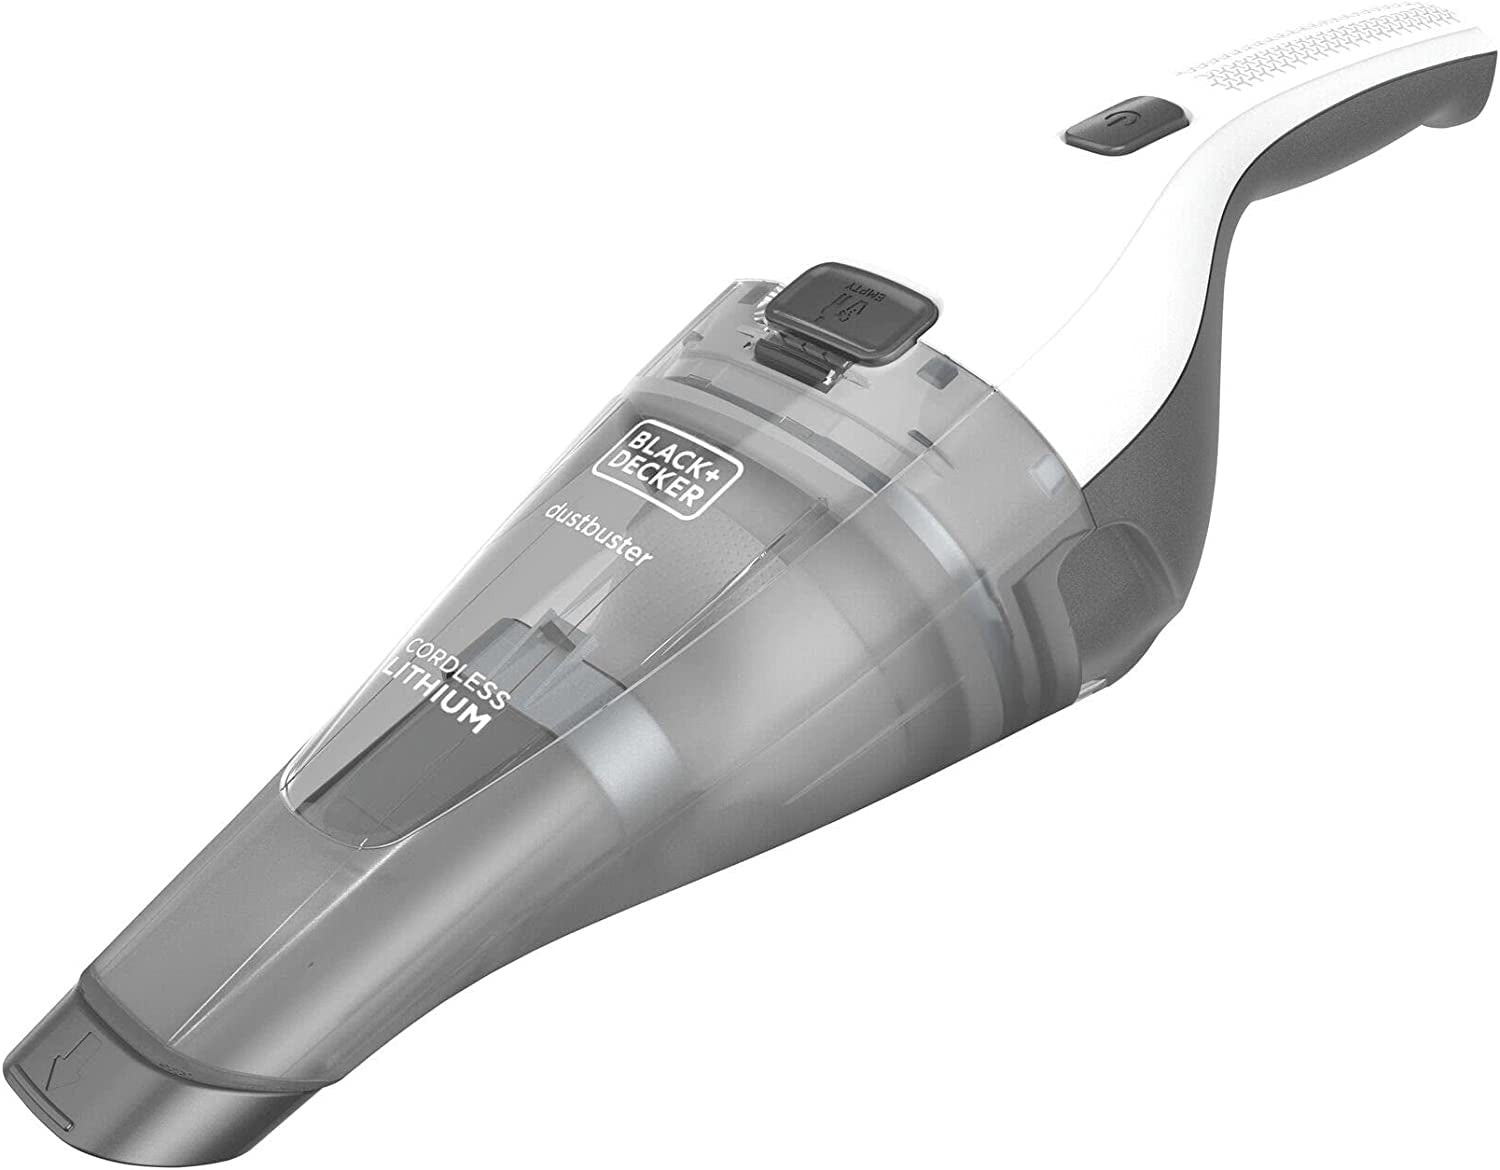 Dustbuster Quickclean Cordless Handheld Vacuum, White (HNVC215B10)